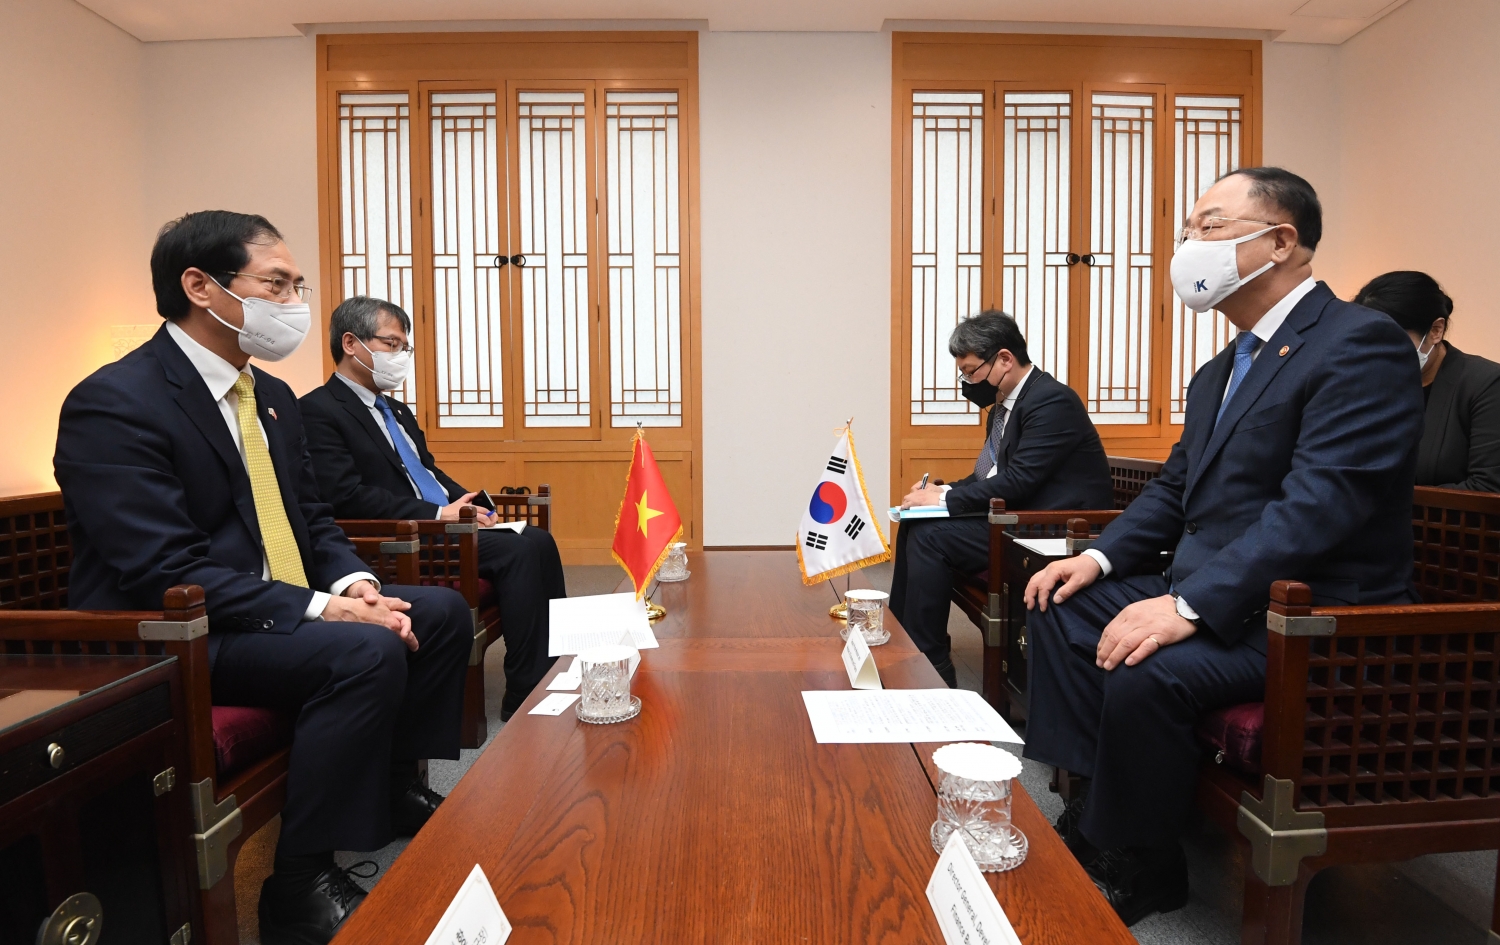 Bộ trưởng Ngoại giao Bùi Thanh Sơn hội kiến Chủ tịch Quốc hội và Phó Thủ tướng, Bộ trưởng Bộ Tài chính Hàn Quốc